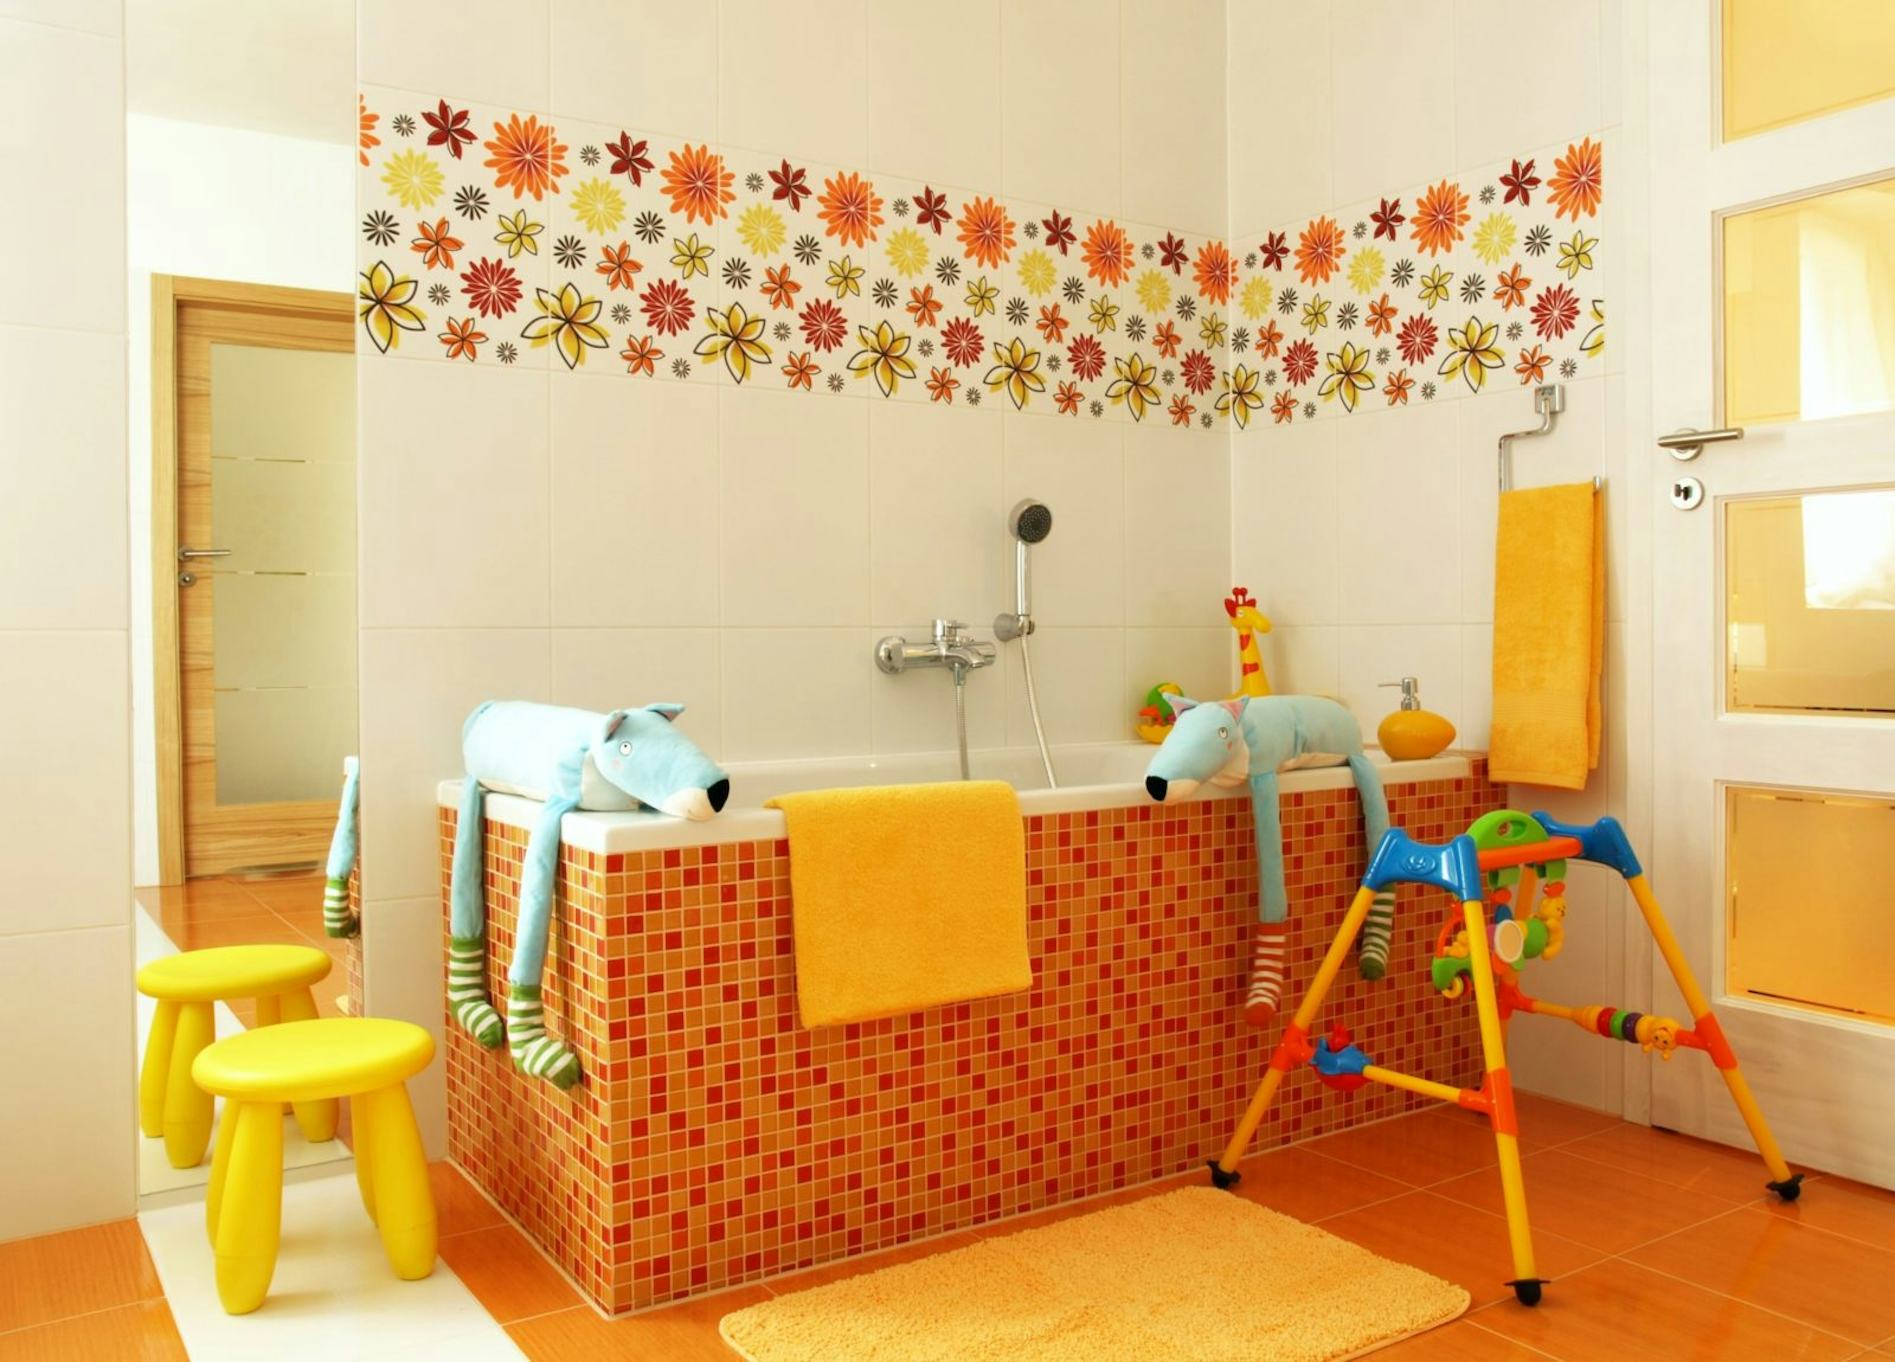 Salle de bain : une pièce à risque pour l'enfant - Harmonie